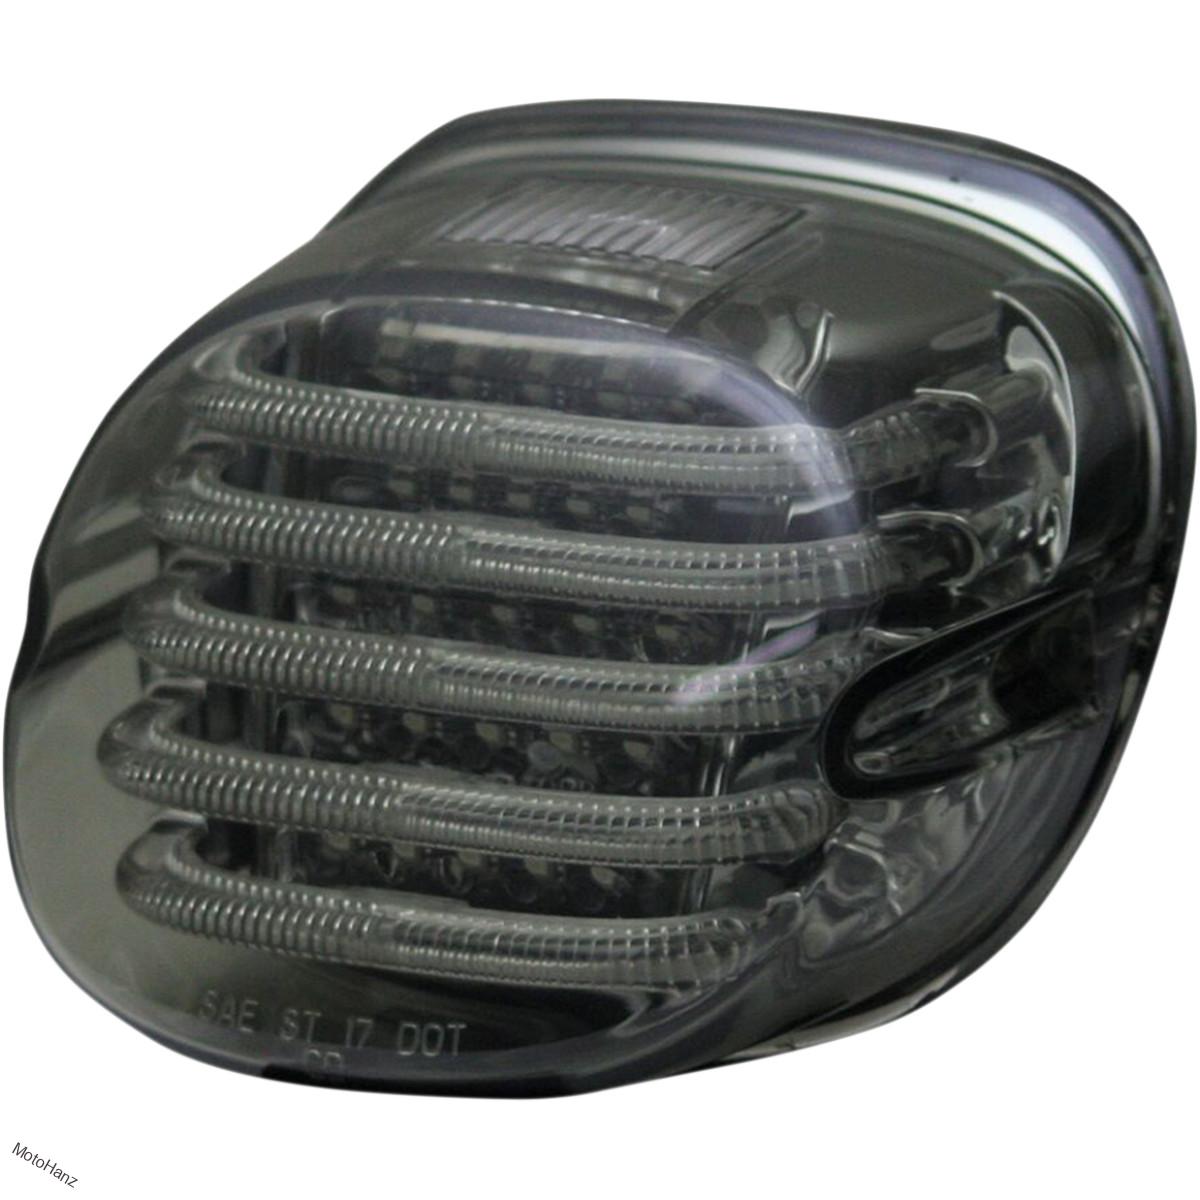 Koncové LED světlo od Custom Dynamics pro Harley Davidson modely 73-98